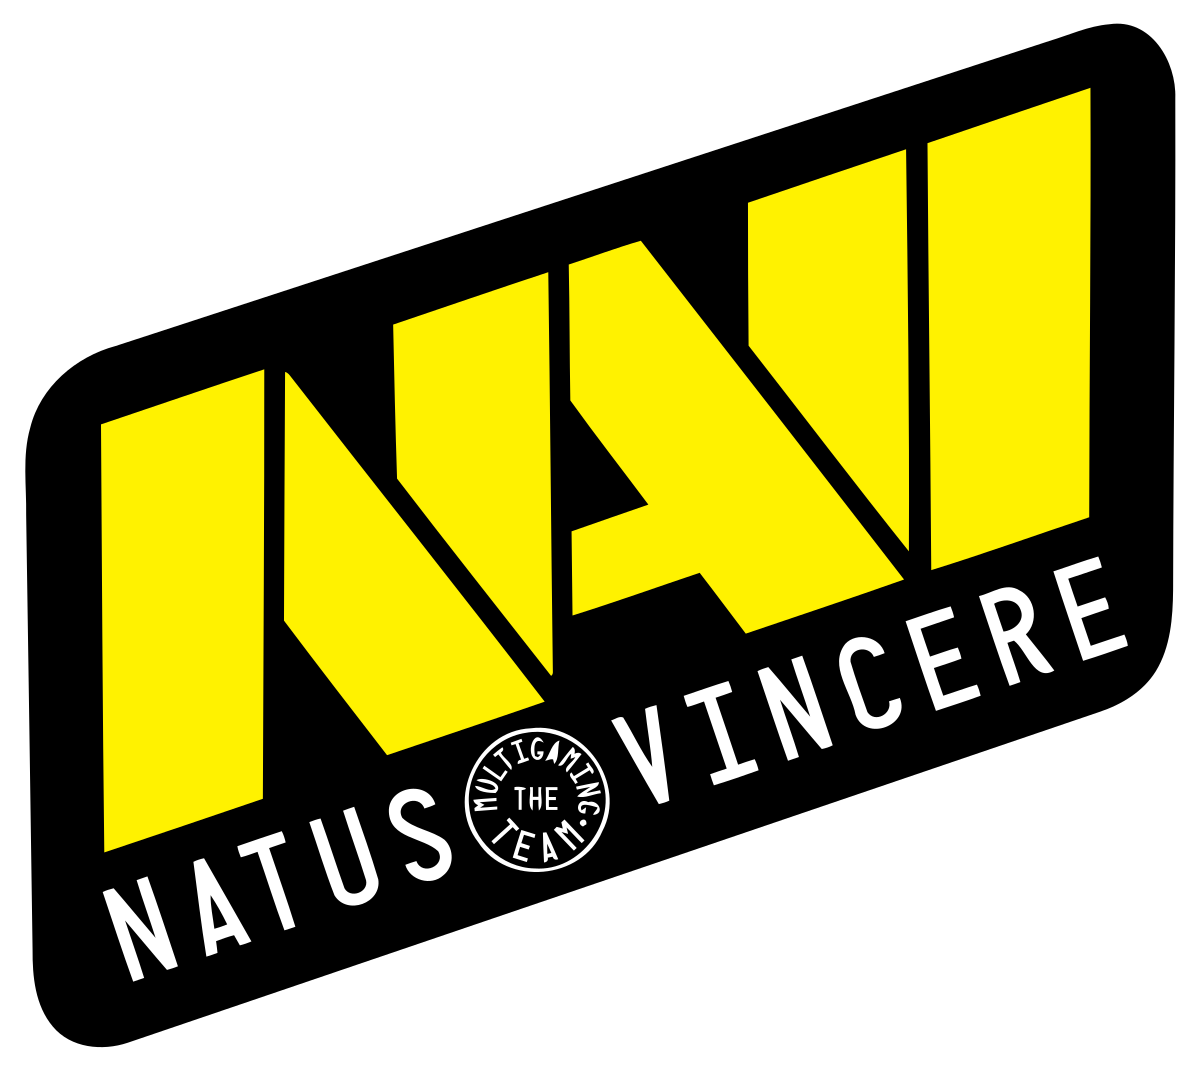 Natus Vincere обыграла Cis Rejects в рамках плей-офф стадии D2CL Season 6